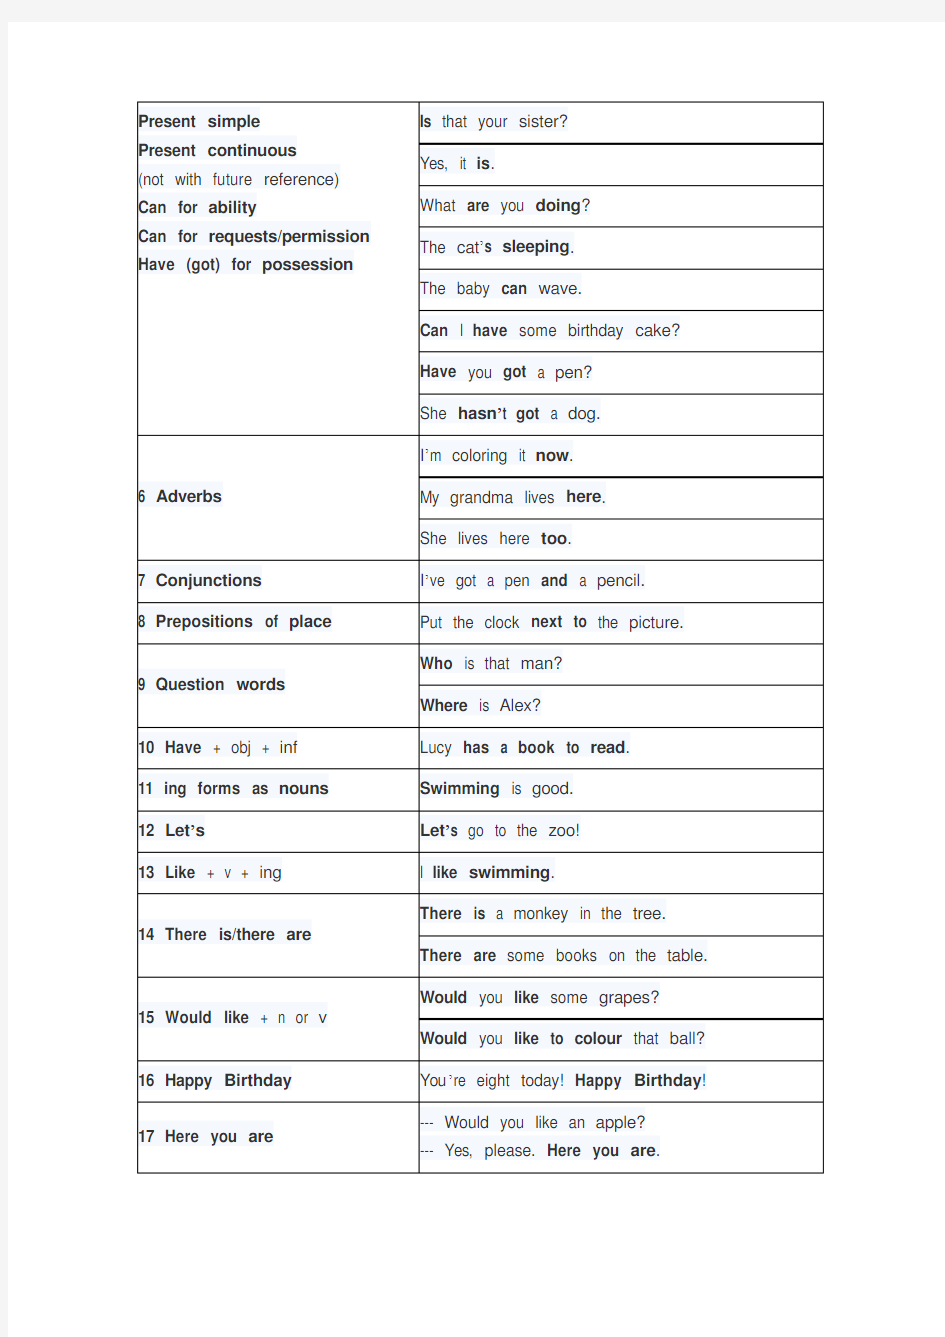 剑桥少儿英语一级语法与重点句型列表